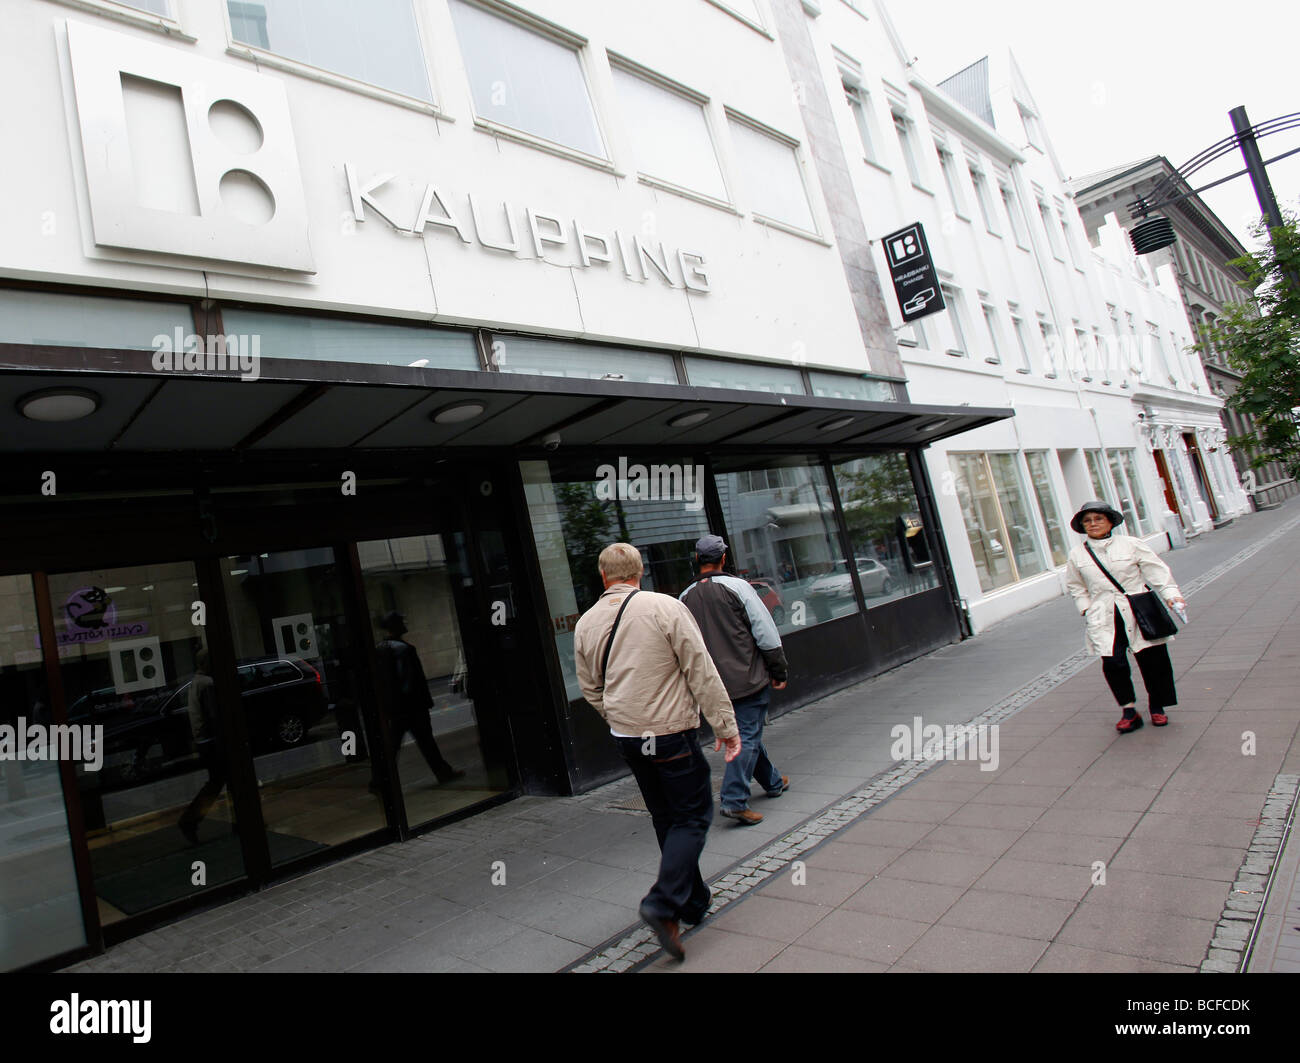 A branch of Kaupþing Bank, Reykjavík, Iceland Stock Photo